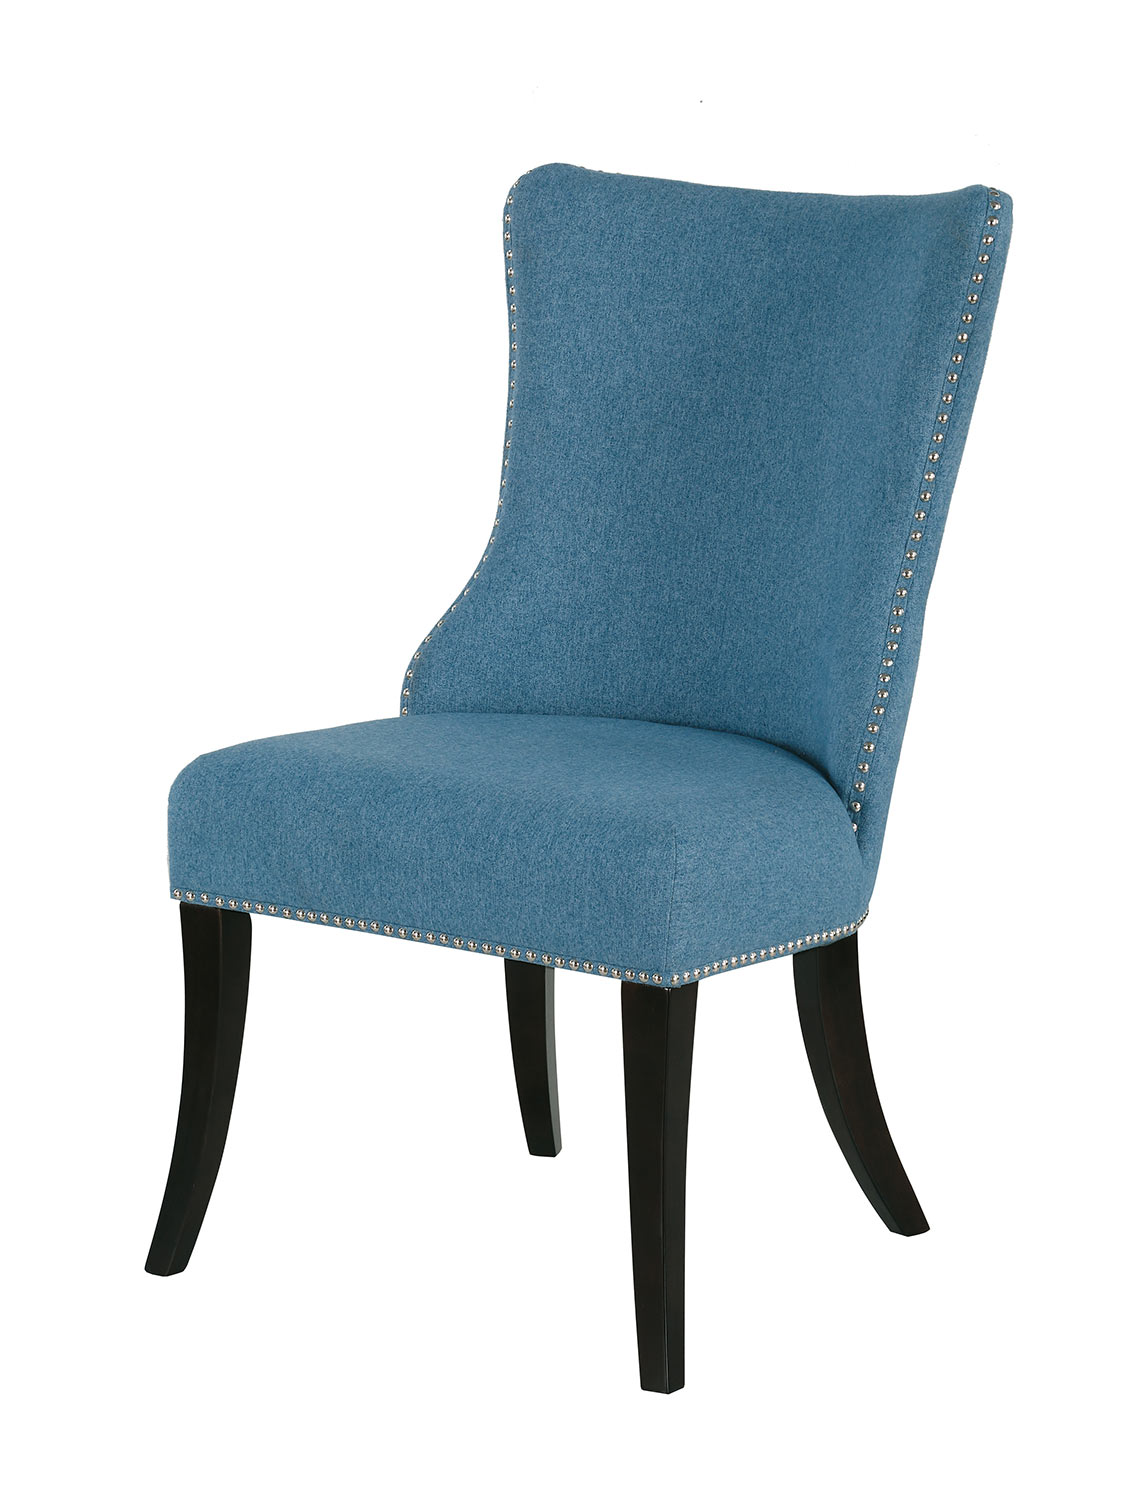 Homelegance Salema Side Chair - Blue - Dark Brown